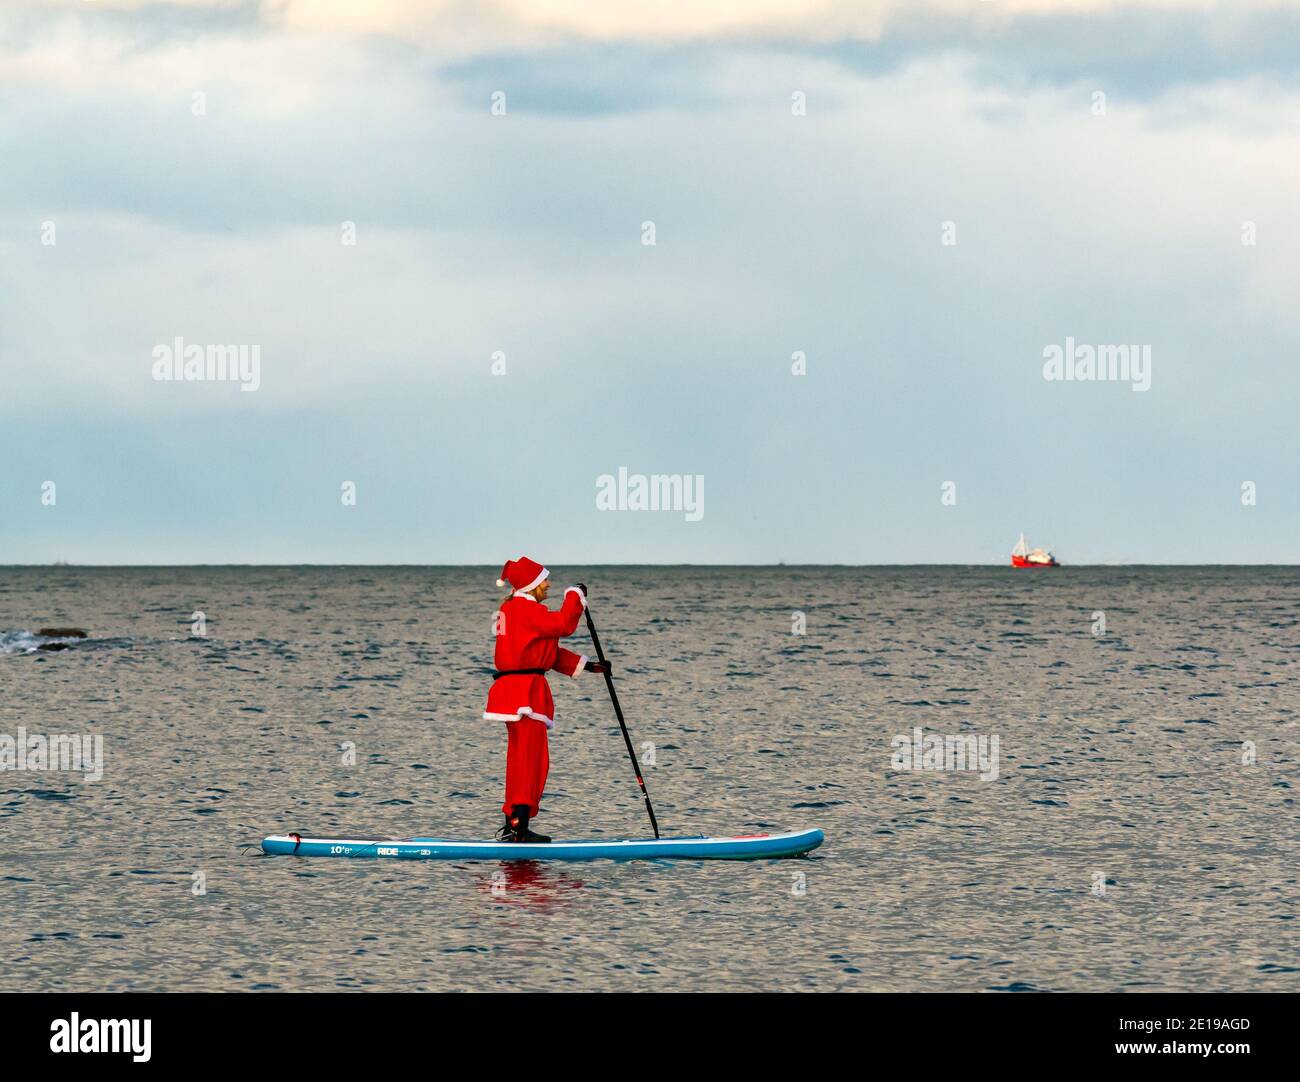 Événement caritatif communautaire : paddle Boarder dans un costume de Santa, Firth of Forth, East Lothian, Écosse, Royaume-Uni Banque D'Images